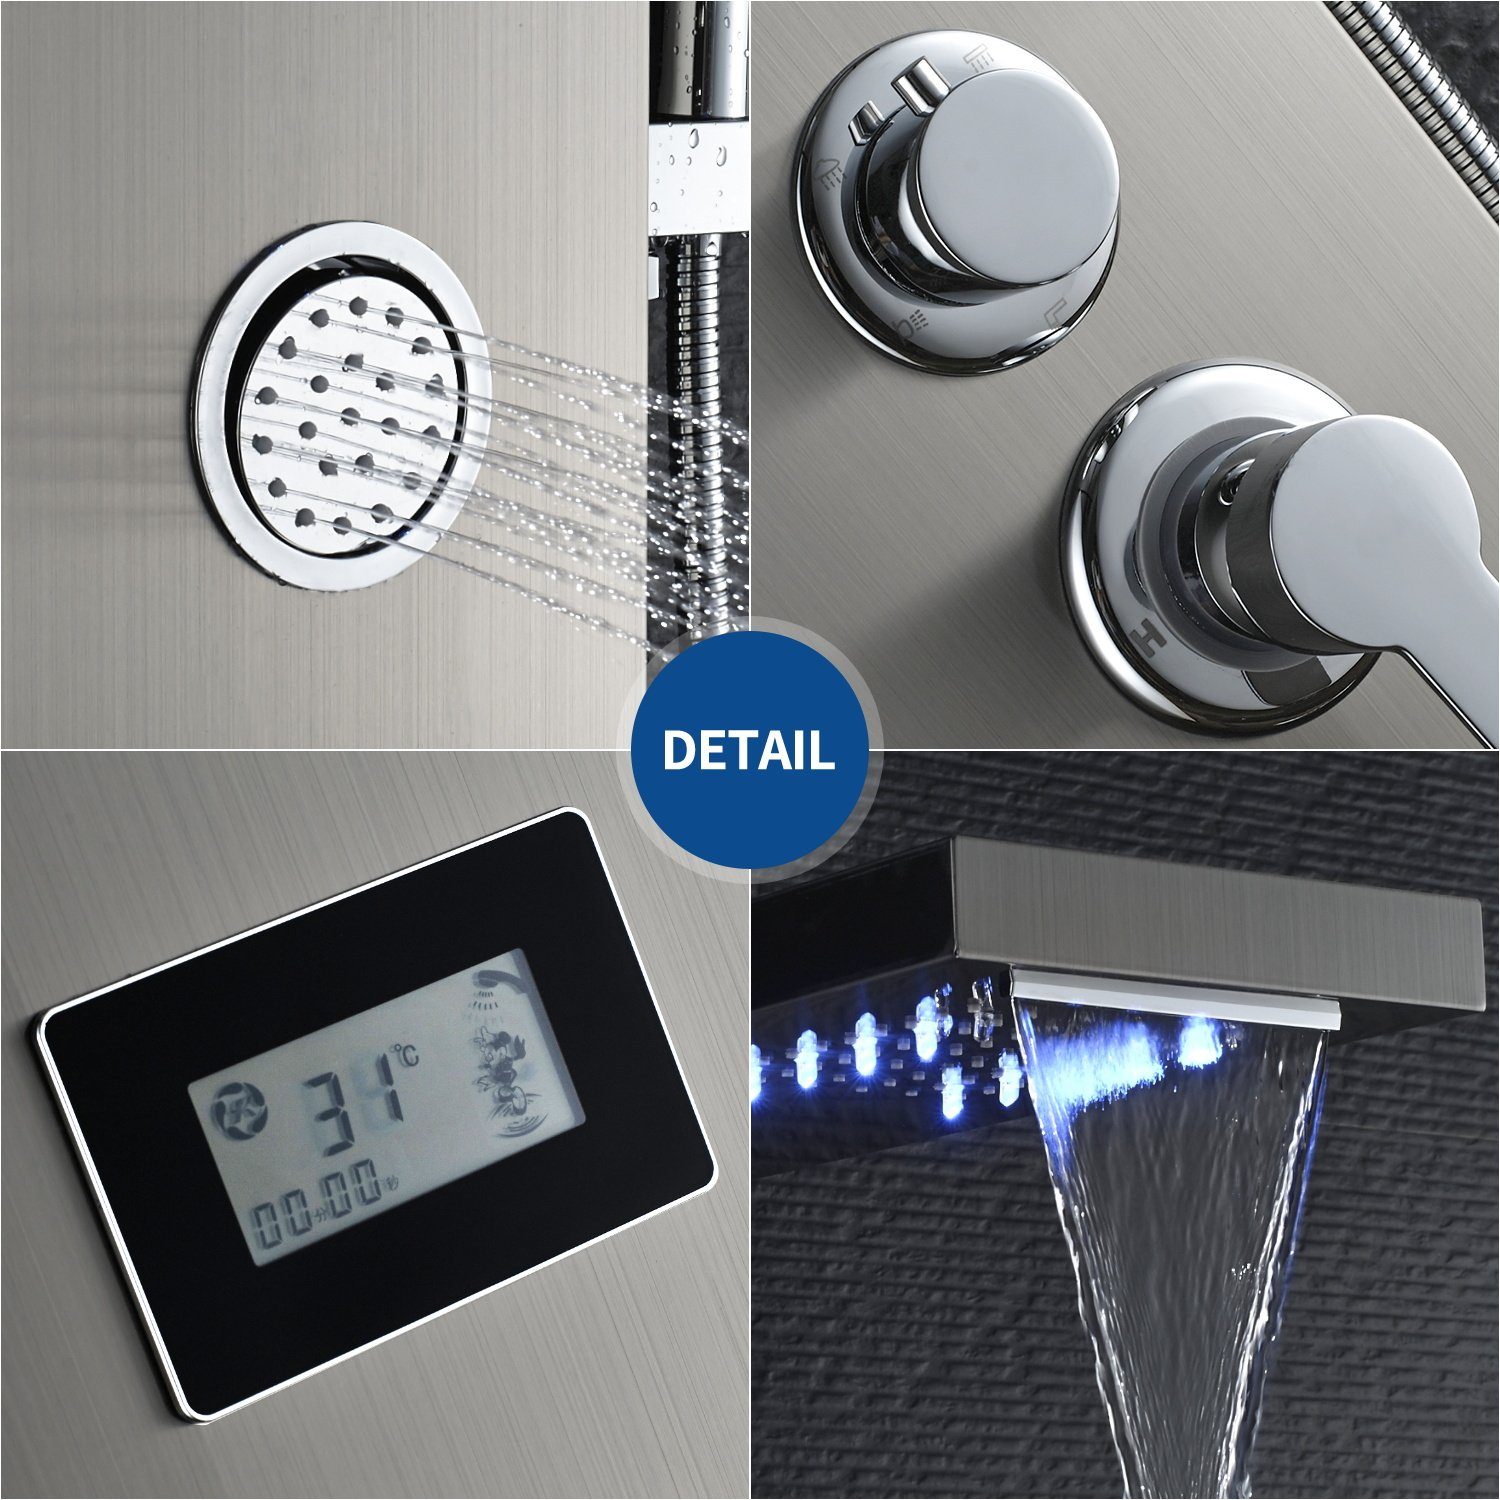 Auralum Duschsystem 5-Funktion mit Duschsäule Edelstahl LED Wassertemperatur-Display Dusch Duschpaneel Handbrause, Badezimmer Duschset